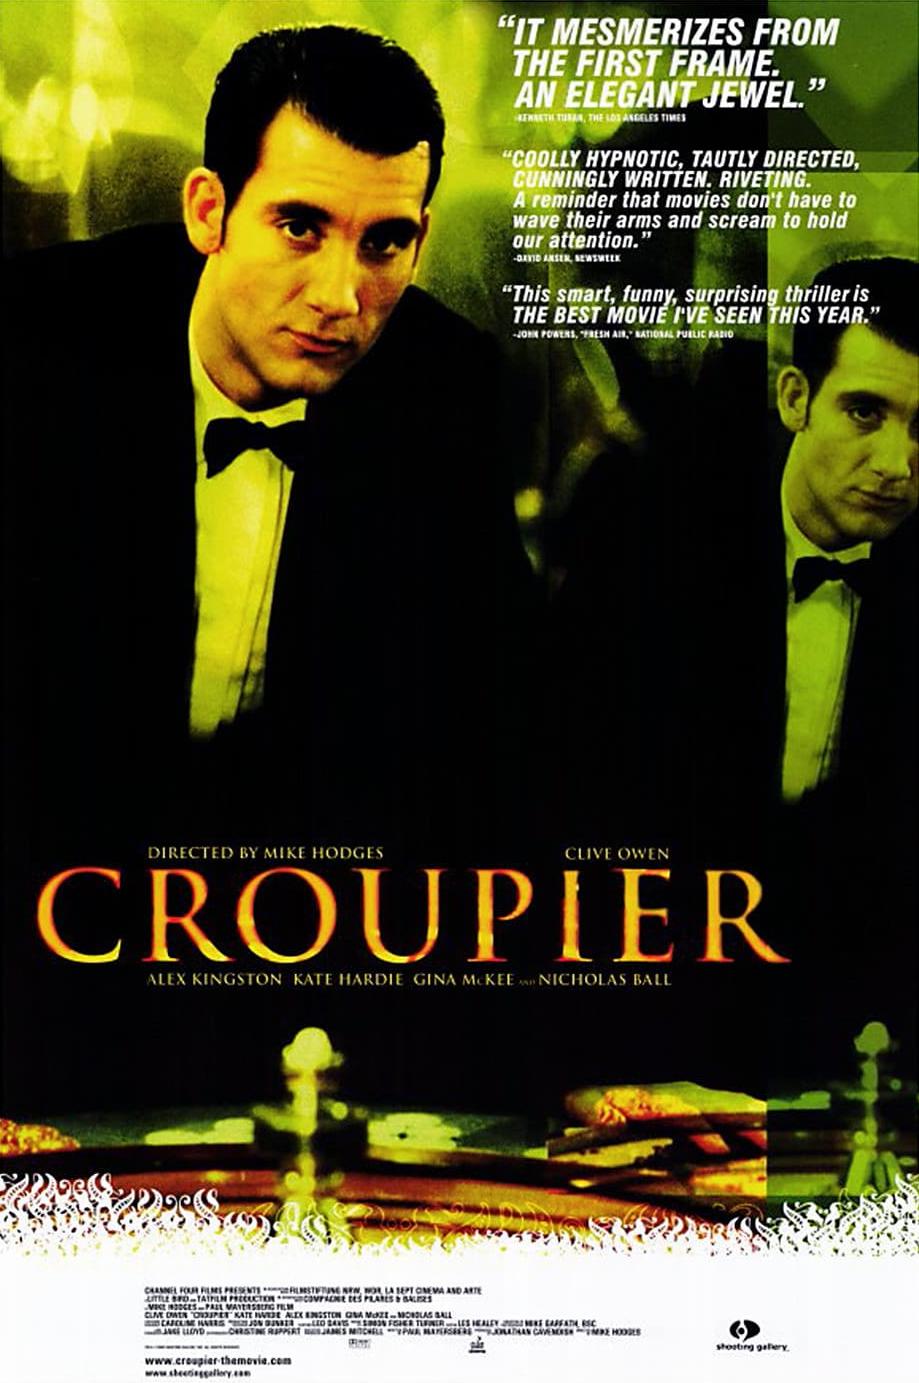 Nonton film Croupier layarkaca21 indoxx1 ganool online streaming terbaru